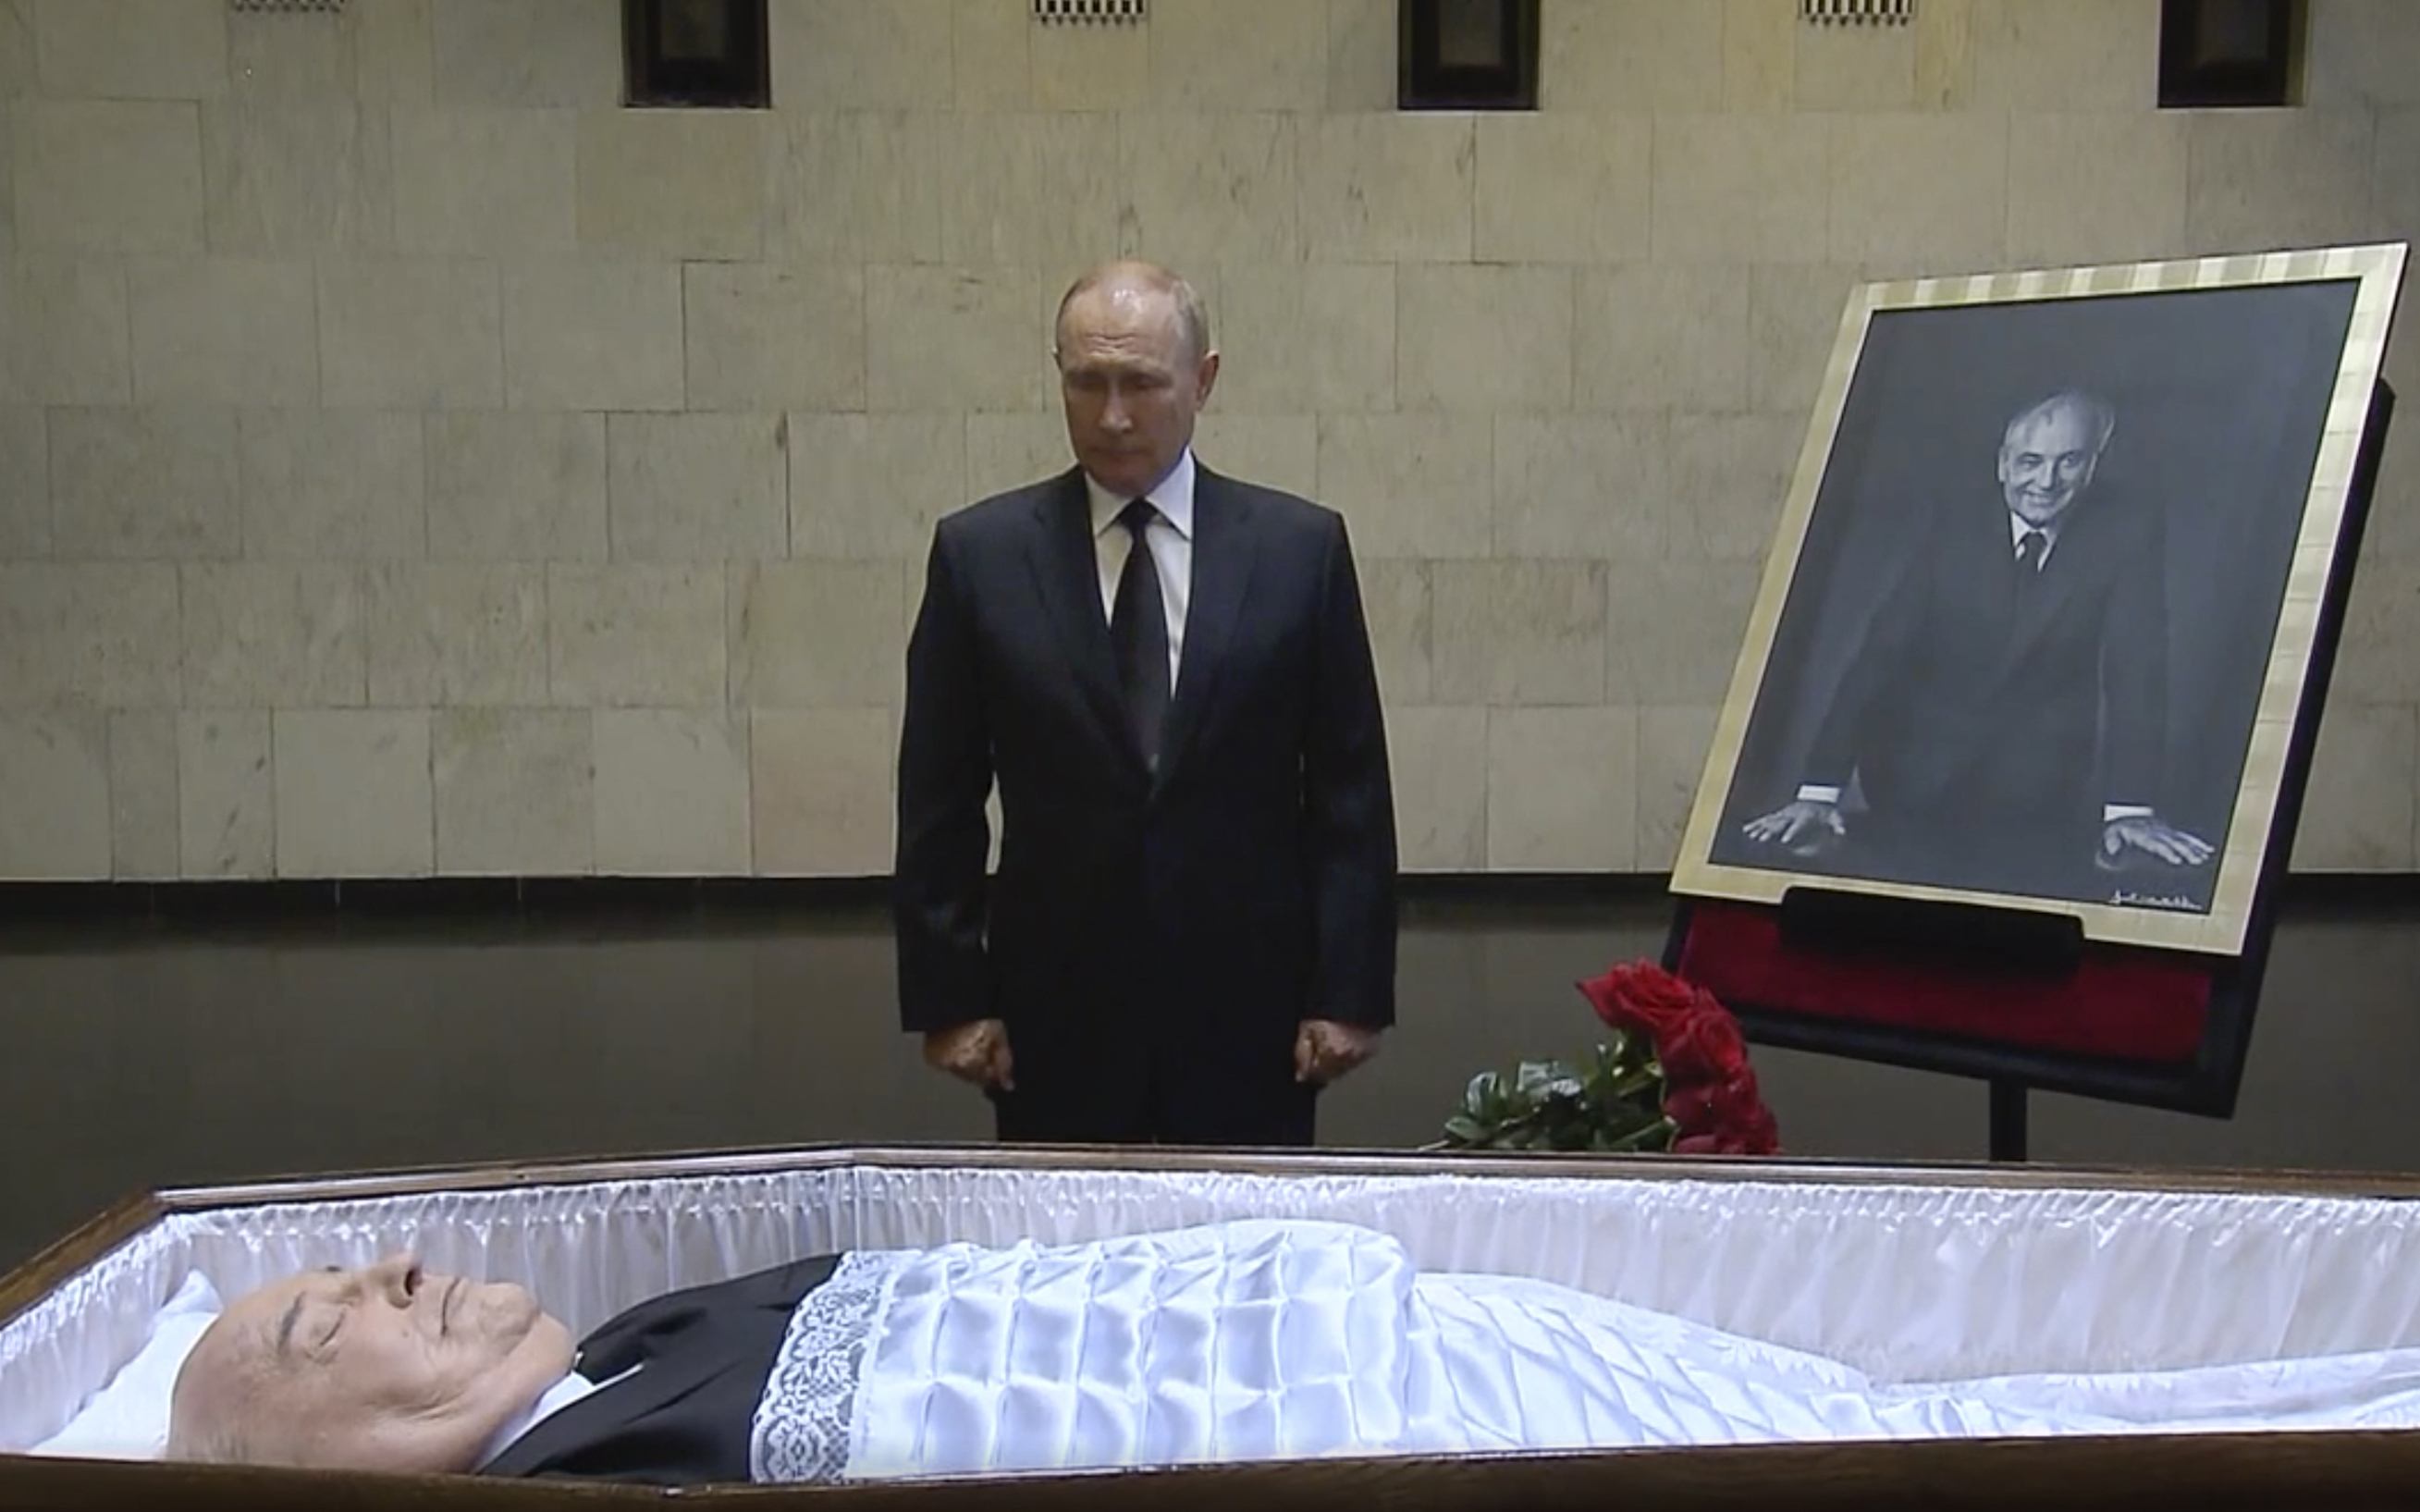 <p>Руският президент Владимир Путин няма да присъства на погребението на Михаил Горбачов в събота, тъй като работният график, &quot;за съжаление, не му позволява&quot;, заяви&nbsp;Дмитрий Песков.</p>

<p>Путин се е простил с последния съветски&nbsp;лидер в Централната клинична болница в Москва и е положил цветя на ковчега му. Руската държавна телевизия показа как Путин се доближава до отворения ковчег на Горбачов и поставя букет червени рози до него. Той стои за кратко в мълчание и с наведена глава, докосва ковчега, прекръства се и се оттегля.</p>